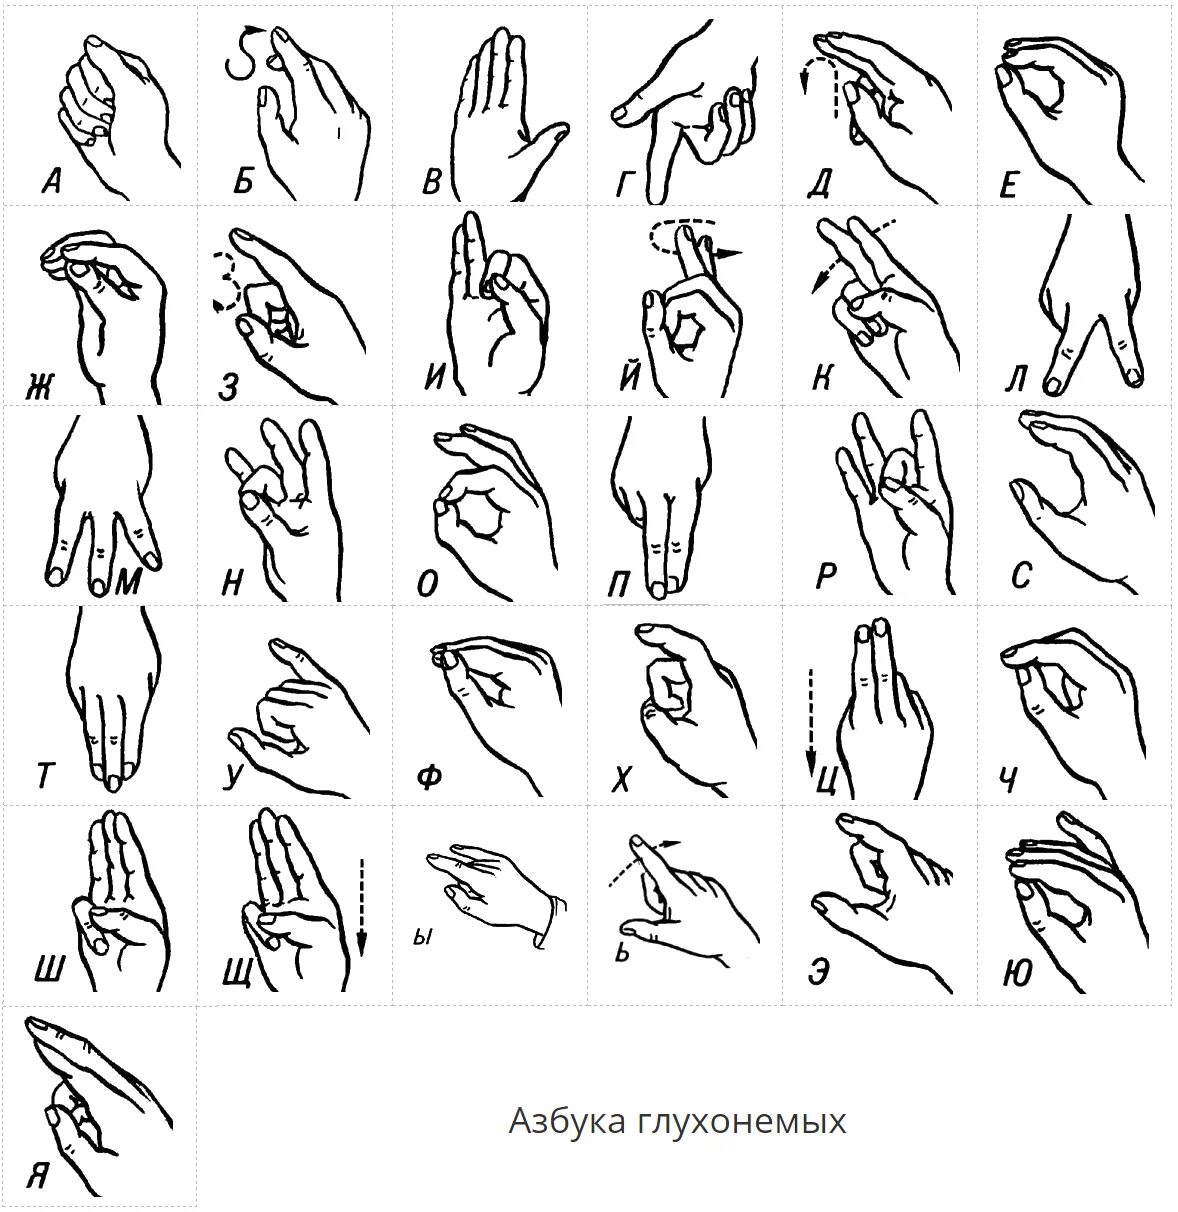 Русские жесты глухонемых. Язык жестов глухонемых алфавит. Алфавит жестов для глухонемых. Дактиль Азбука жестов. Азбука для глухонемых дактильная.